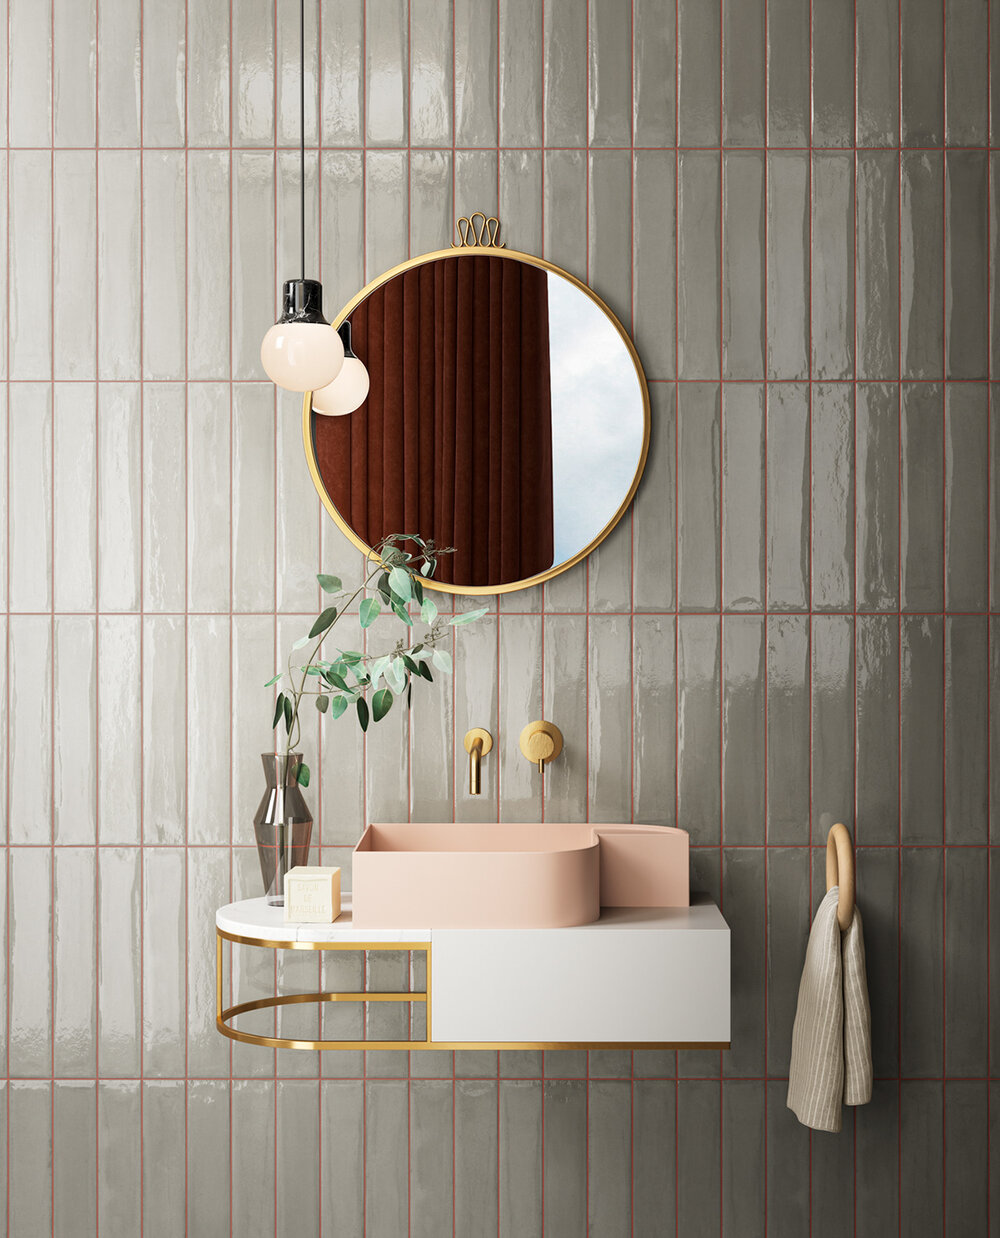 ilaria fatone inspirations - une salle de bains avec lavabo rose et faience verte